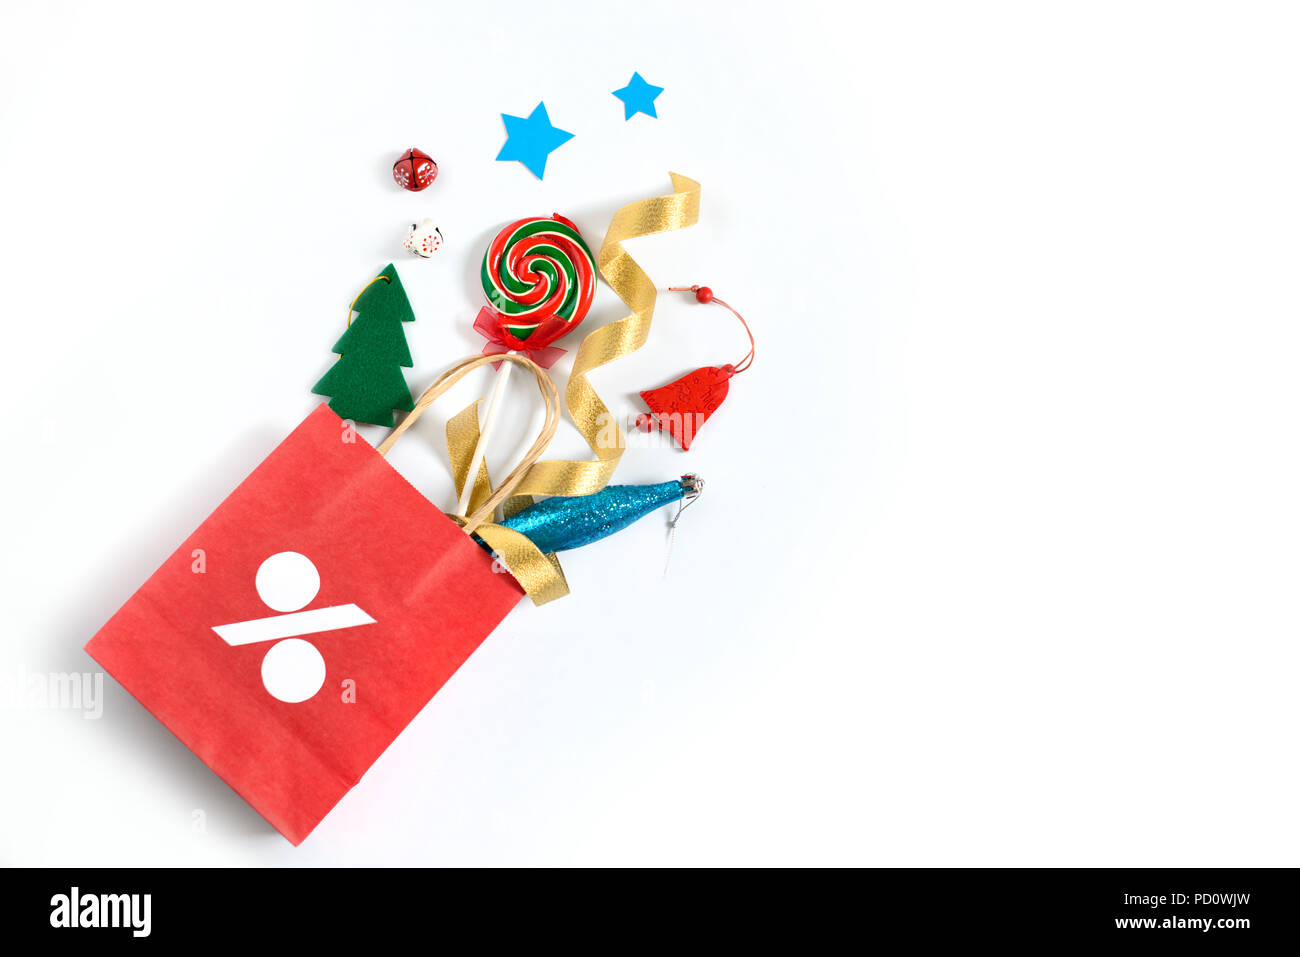 Weihnachten Geschenke fallen von den roten Einkaufstasche, Urlaub präsentiert auf weißem Hintergrund, kostenlose Kopie Raum Stockfoto